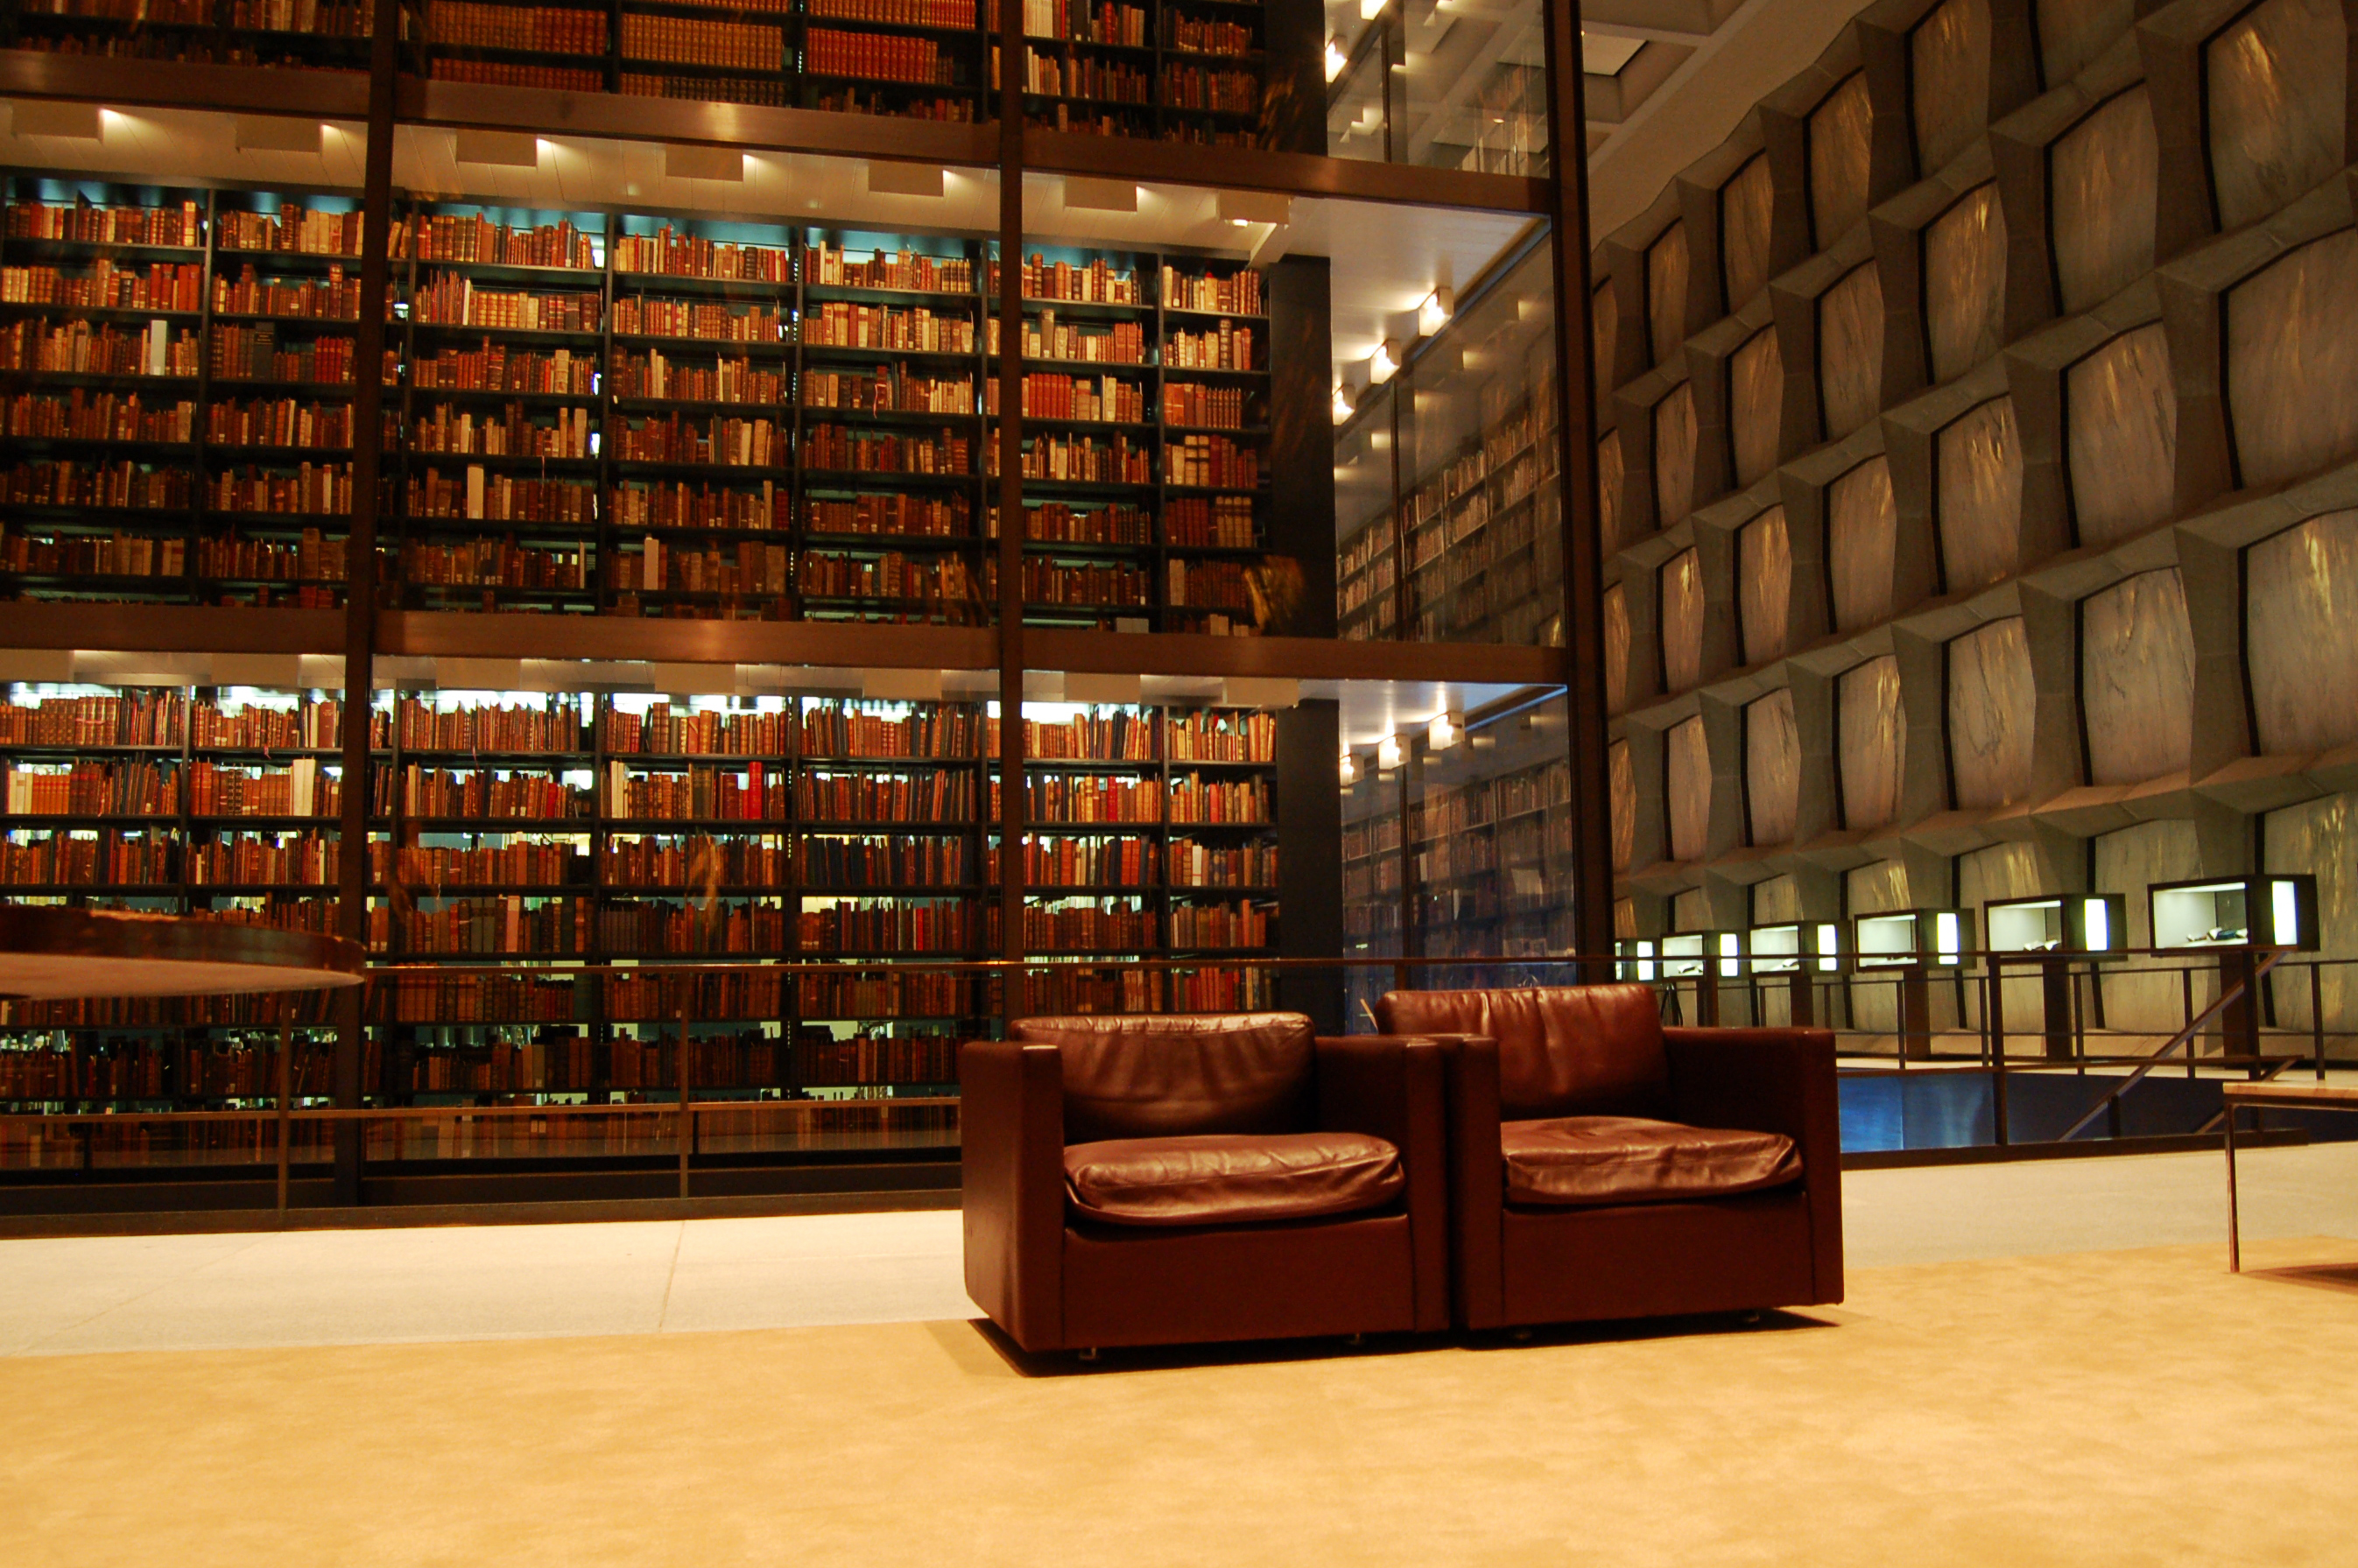 Большая библиотека номеров. Йельский университет библиотека. Библиотека Бейнеке в Йельском университете. Королевская библиотека Дании. Библиотека Бейнеке в Йельском университете (1963).